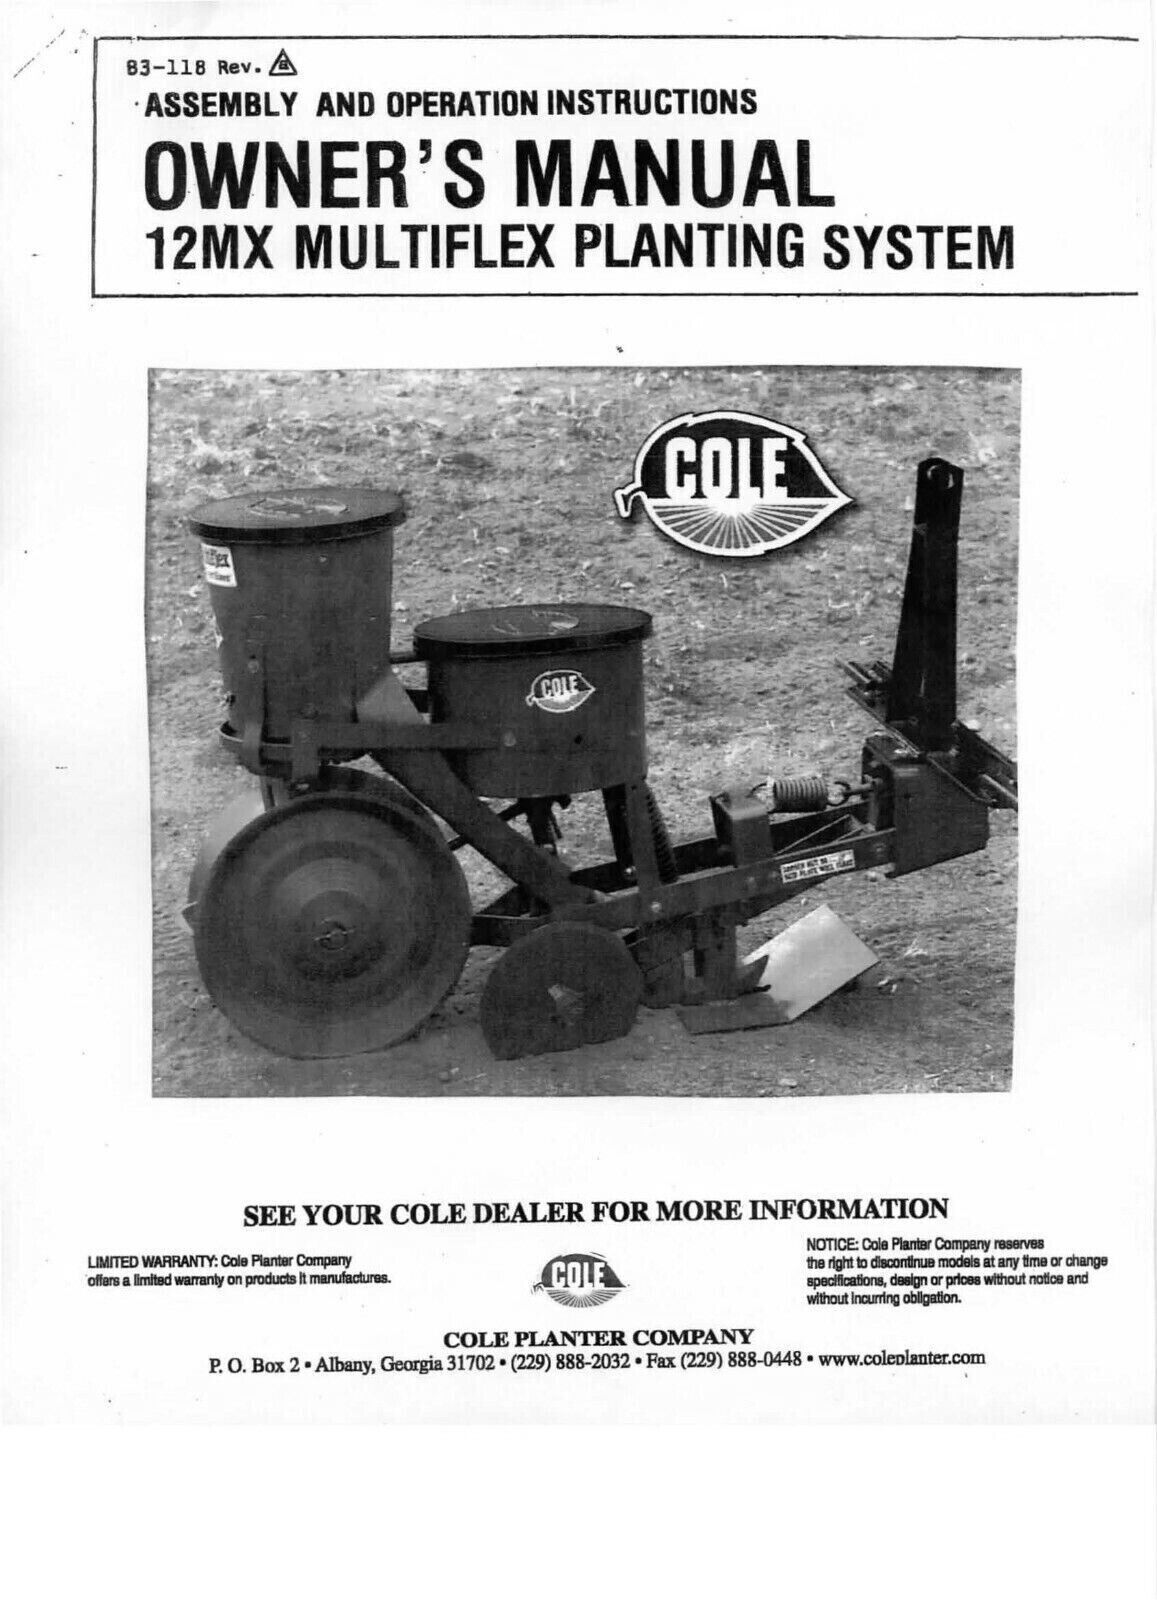 Owners & Parts List Manual Fits Cole Garden Planter Fertilizer 12MX Multiplex